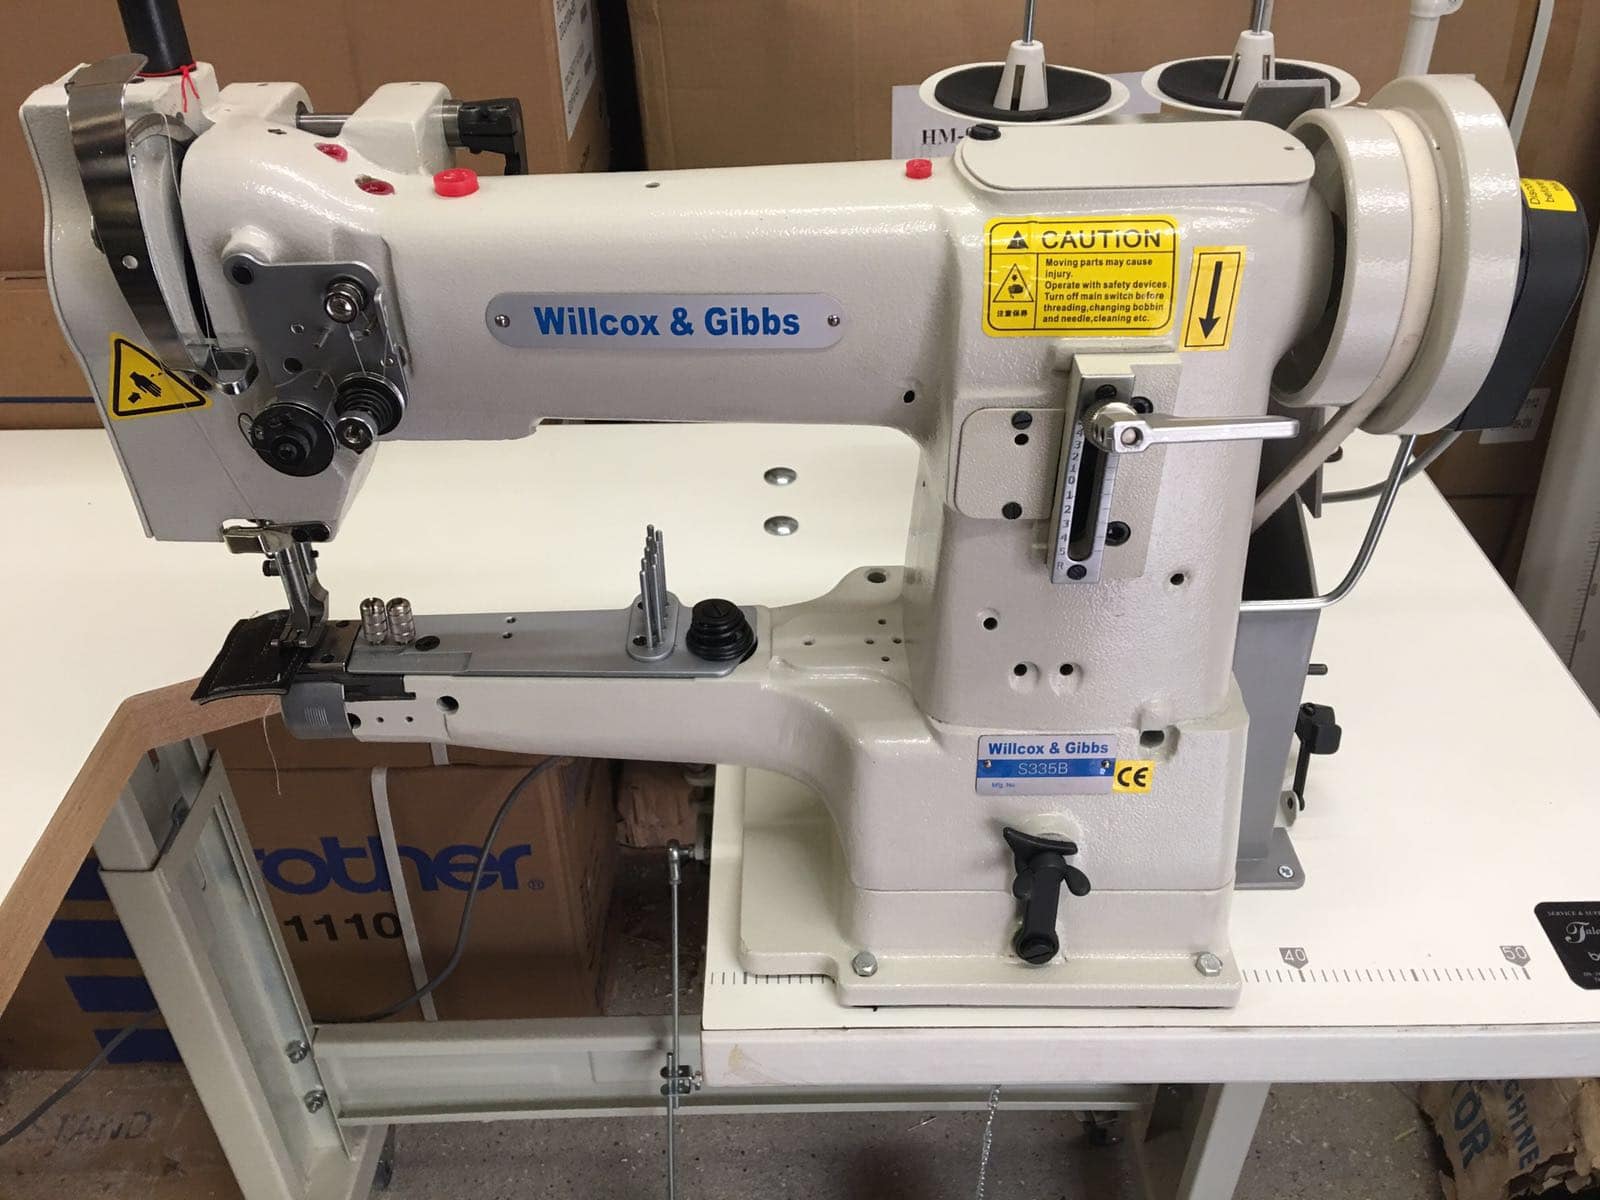 Sewing gibbs machines and wilcox Willcox &